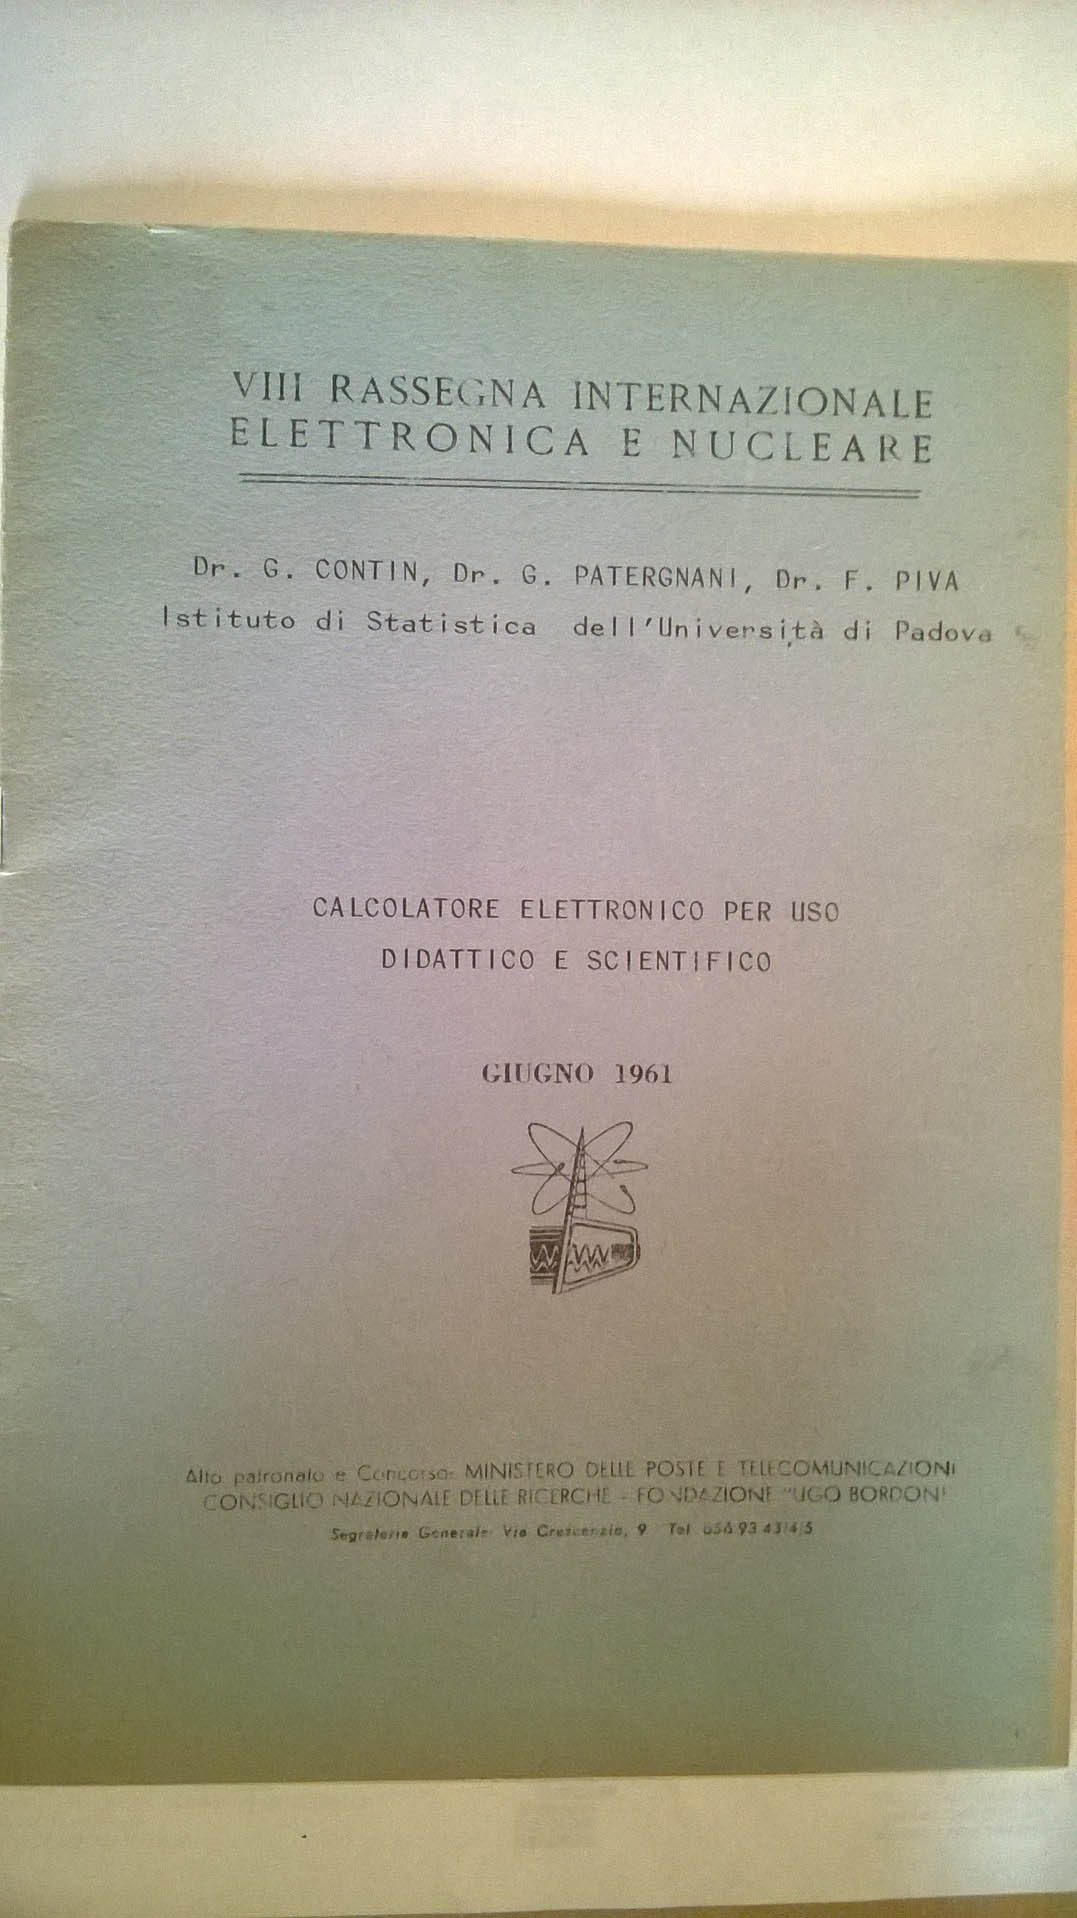 G., Patergnani G., Piva F. “Calcolatore elettronico per uso didattico e scientifico.” Abstract from the Proceedings of the VIII Rassegna internazionale elettronica e nucleare. Roma, 1961